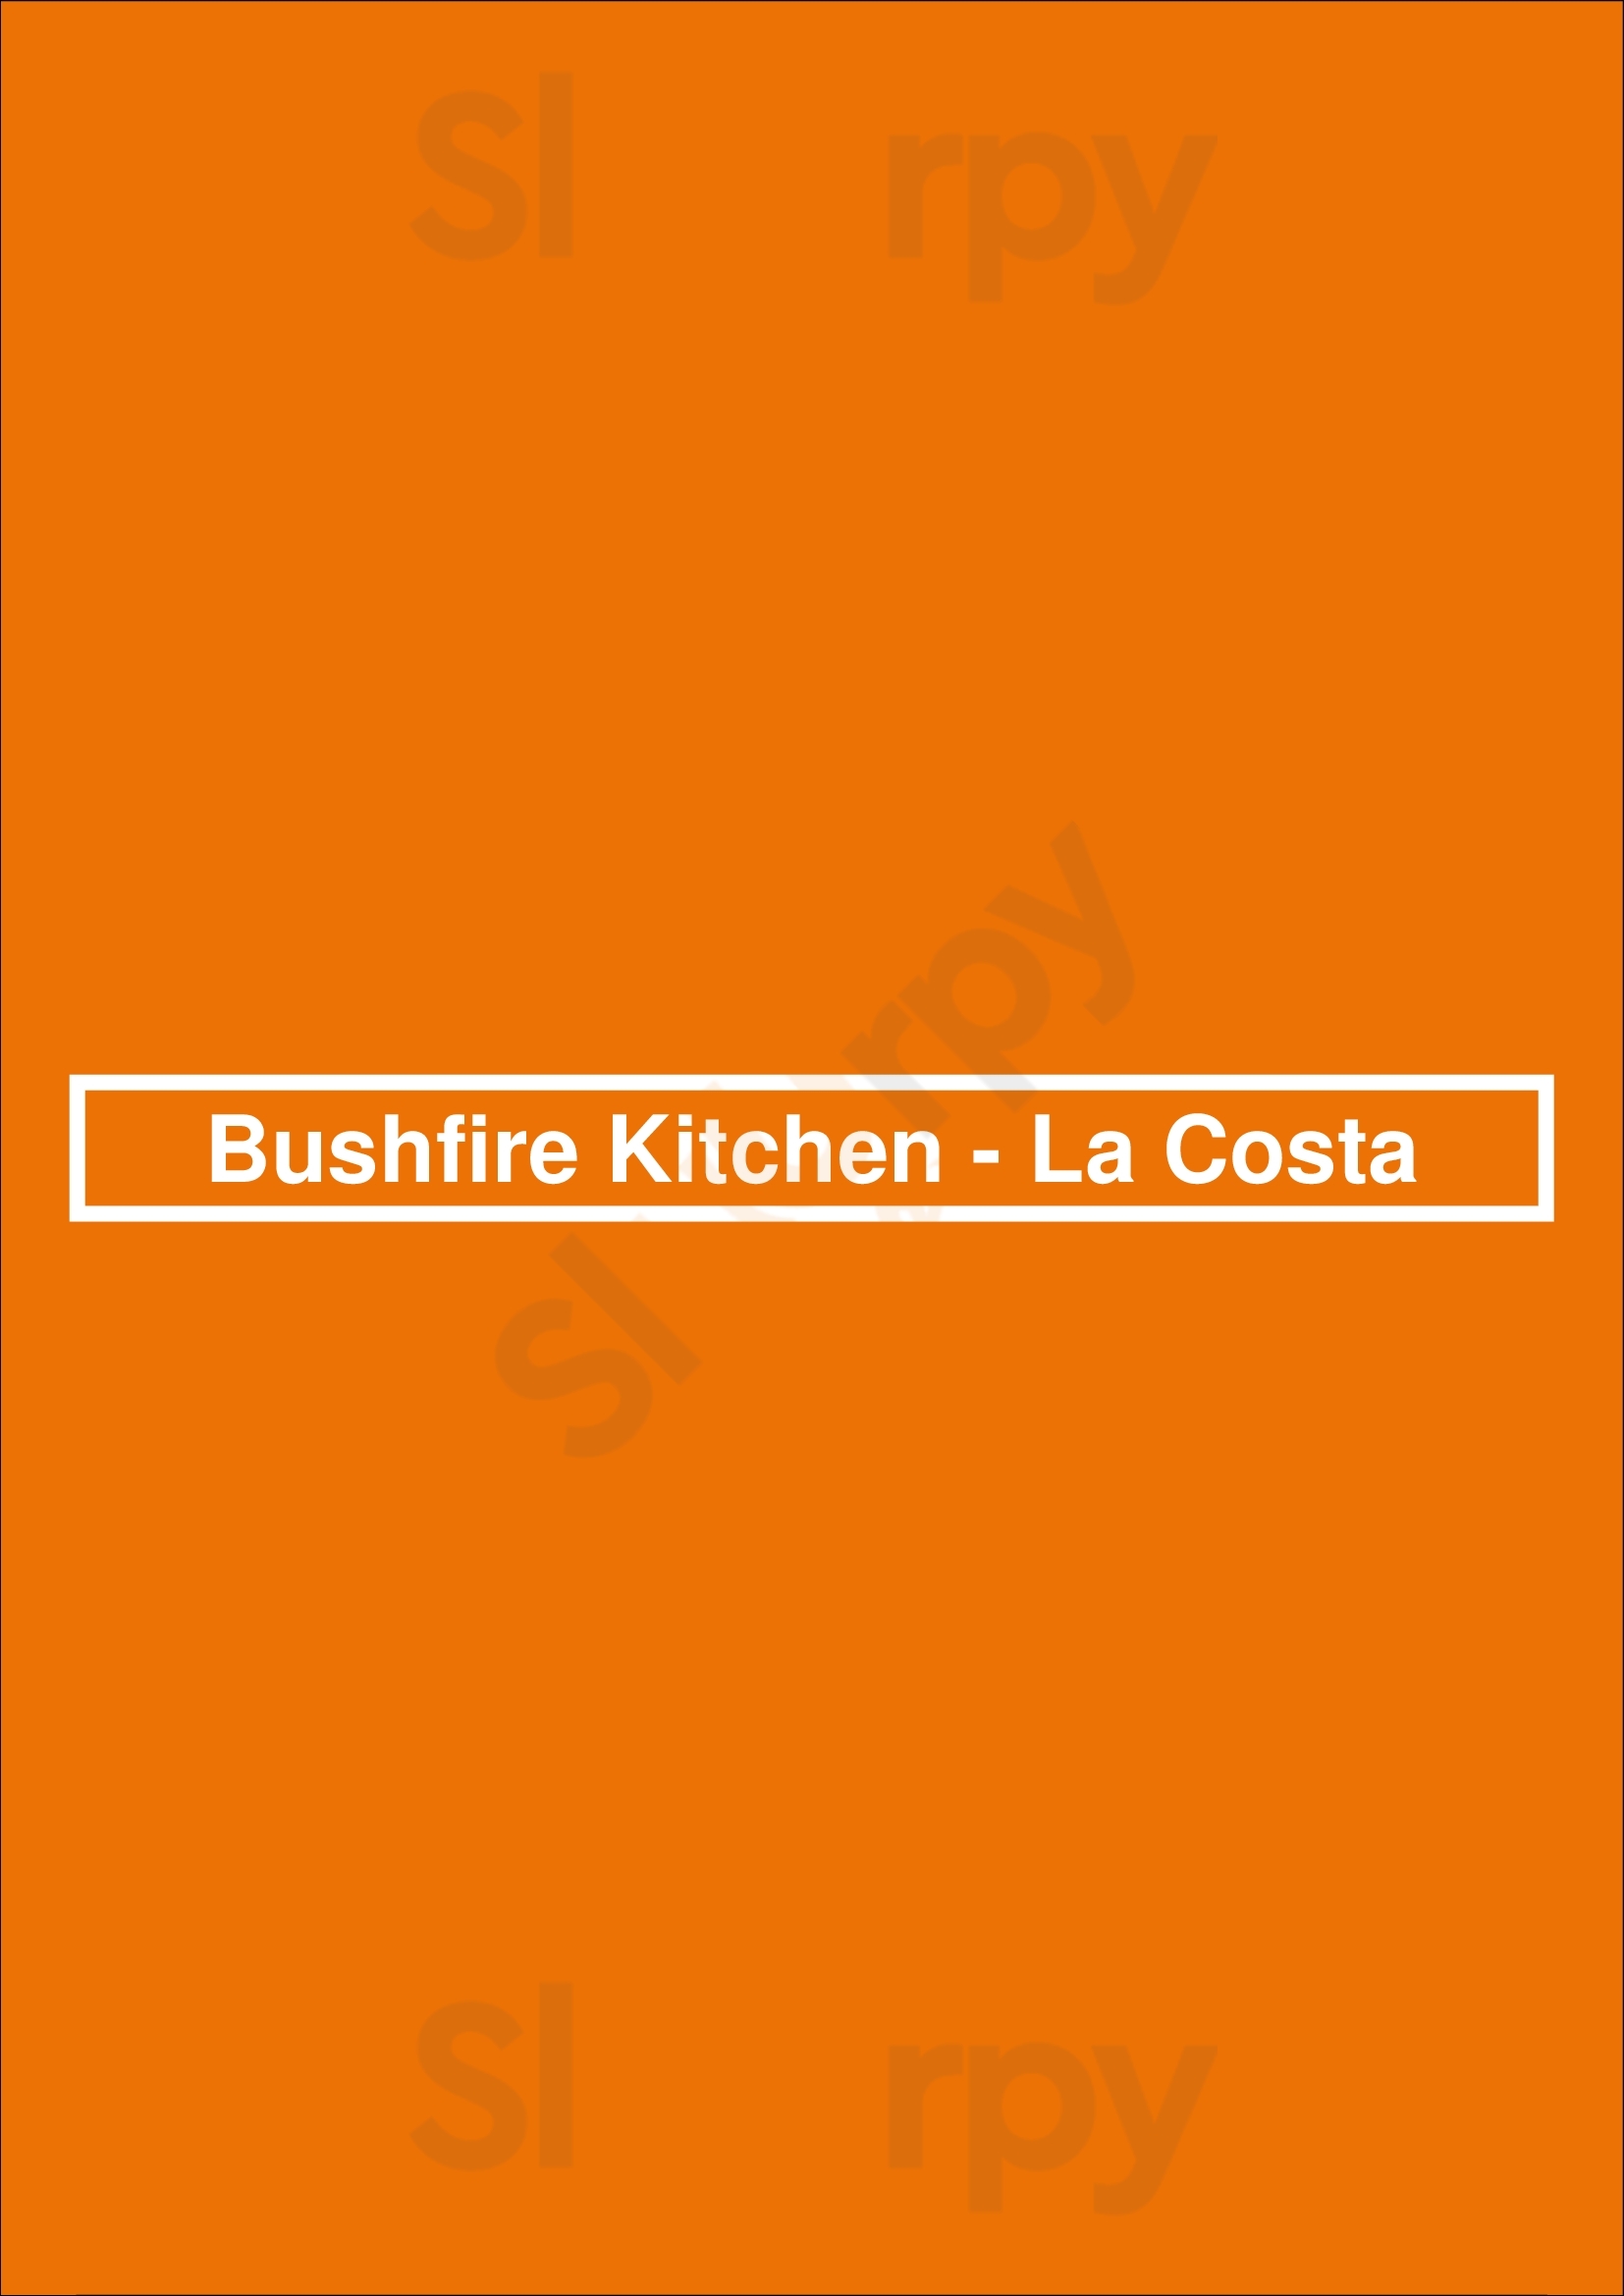 Bushfire Kitchen - La Costa Carlsbad Menu - 1